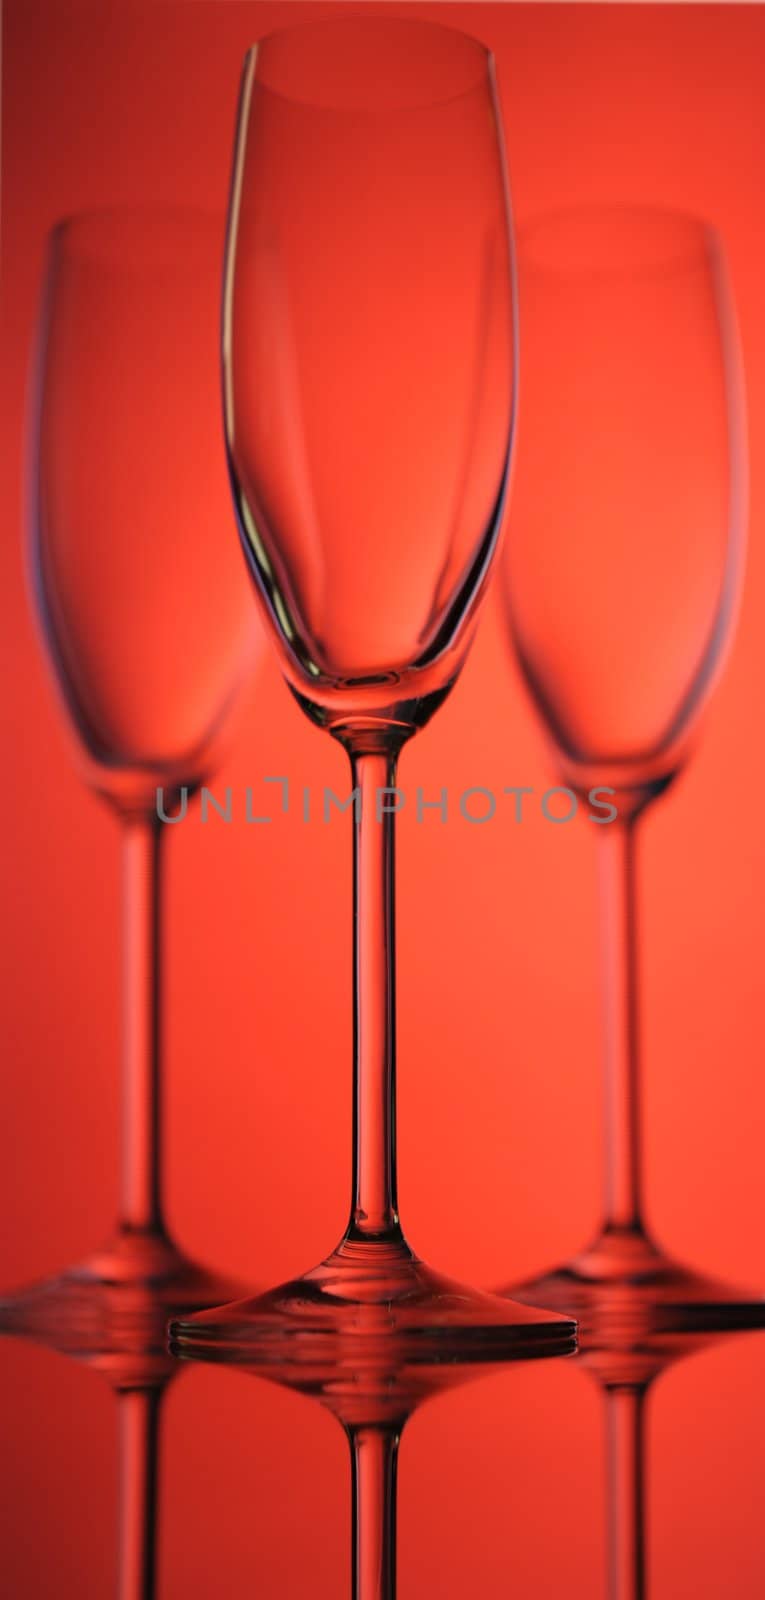 Wine glass. by gkuna